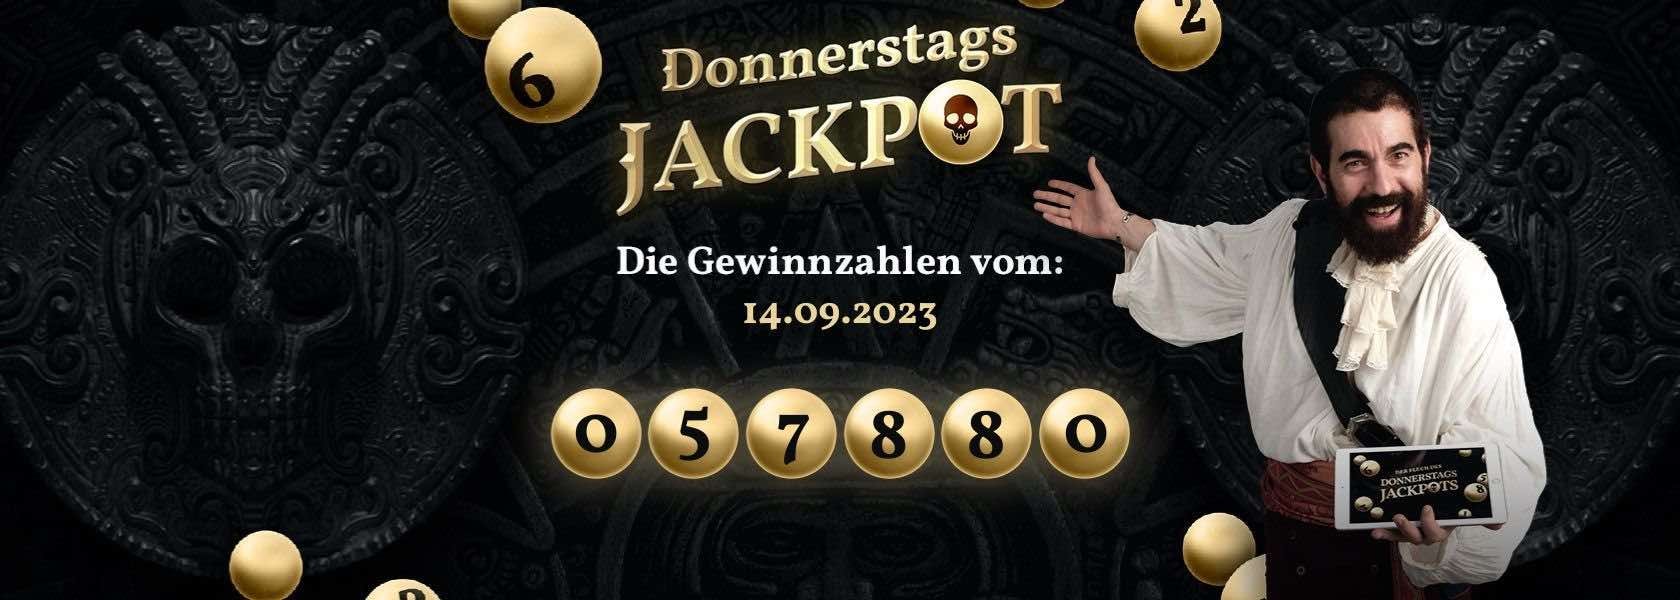 donnerstags-jackpot-lotterie-gewinnzahlen-14092023-jackpotpiraten